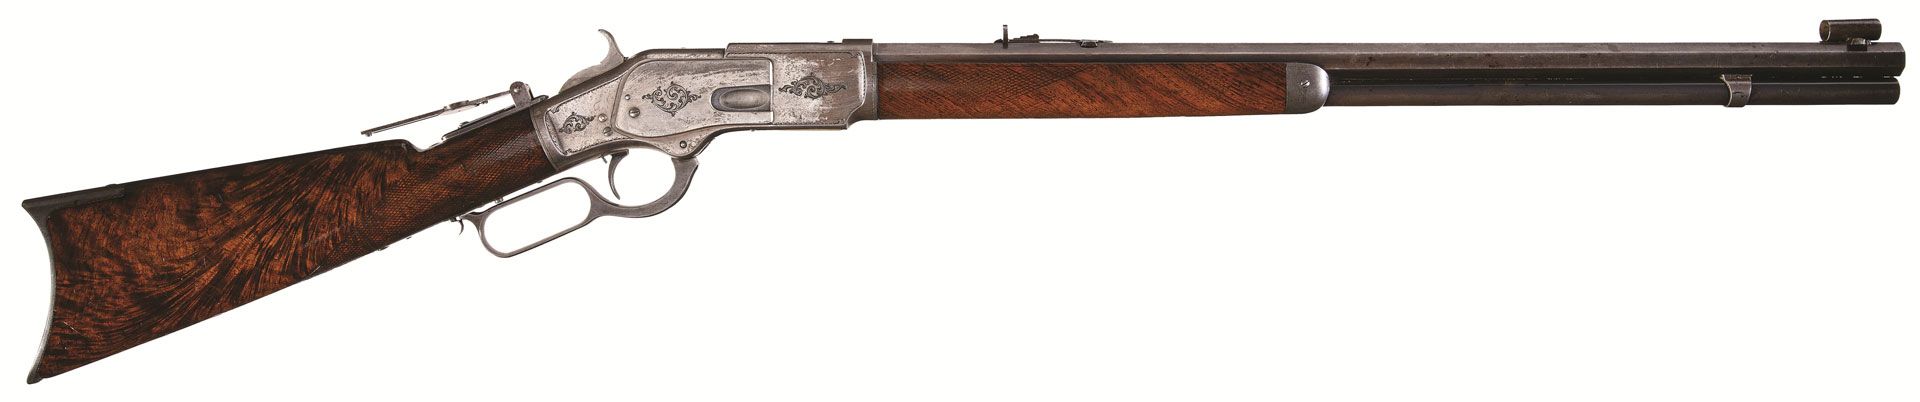 Gun Auction Granville Stuarts Rifles for sale